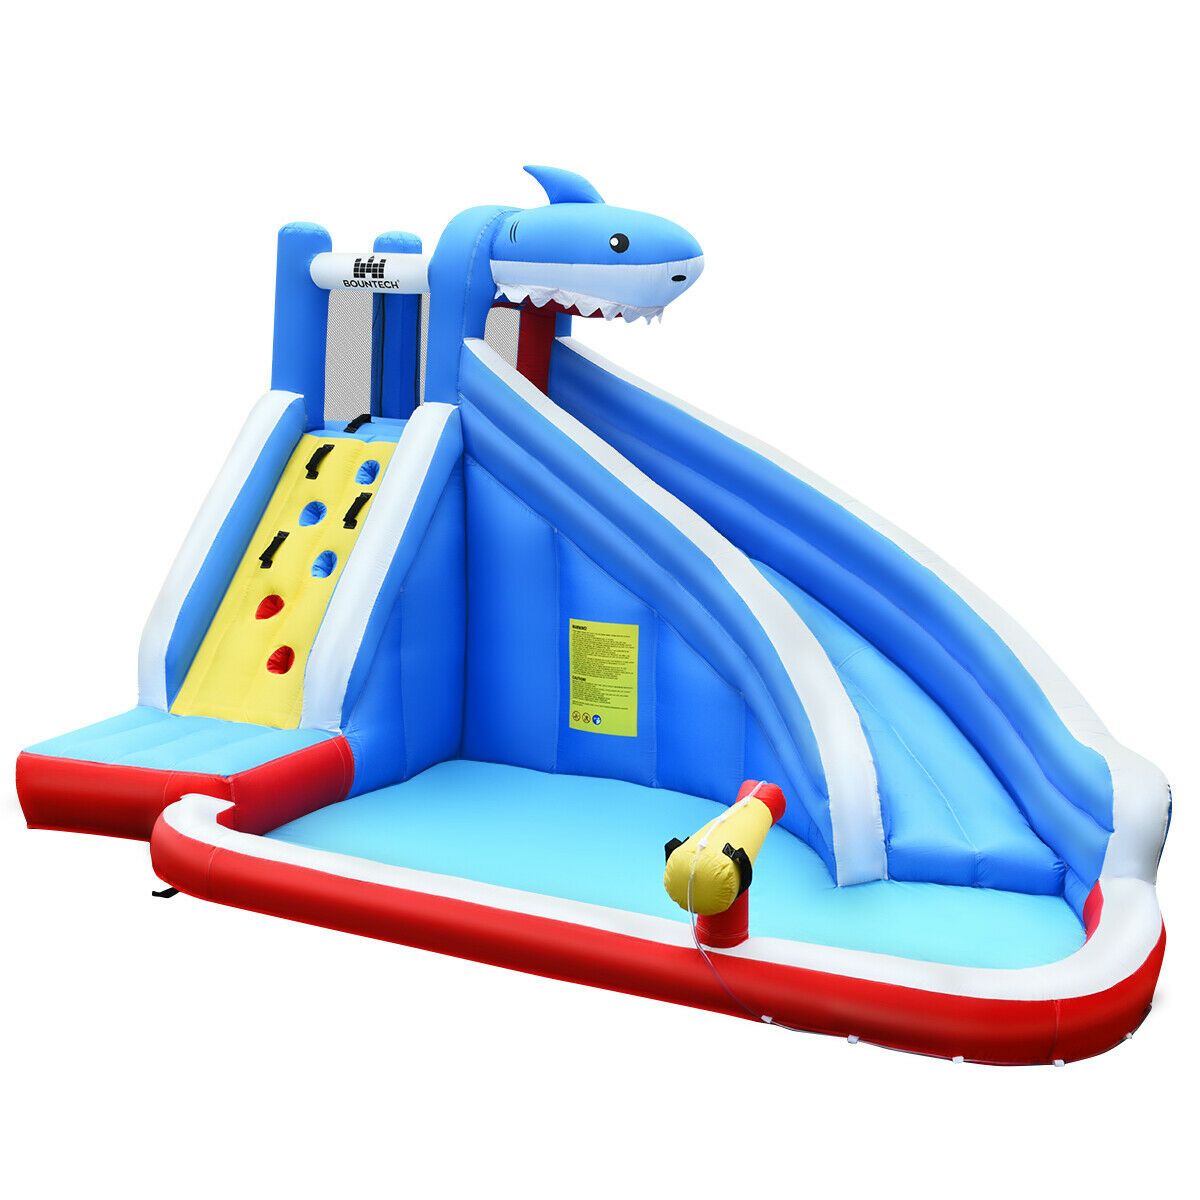 Giant Spacious Kids Inflatable Blow Up Water Slide Pool - Westfield Retailers